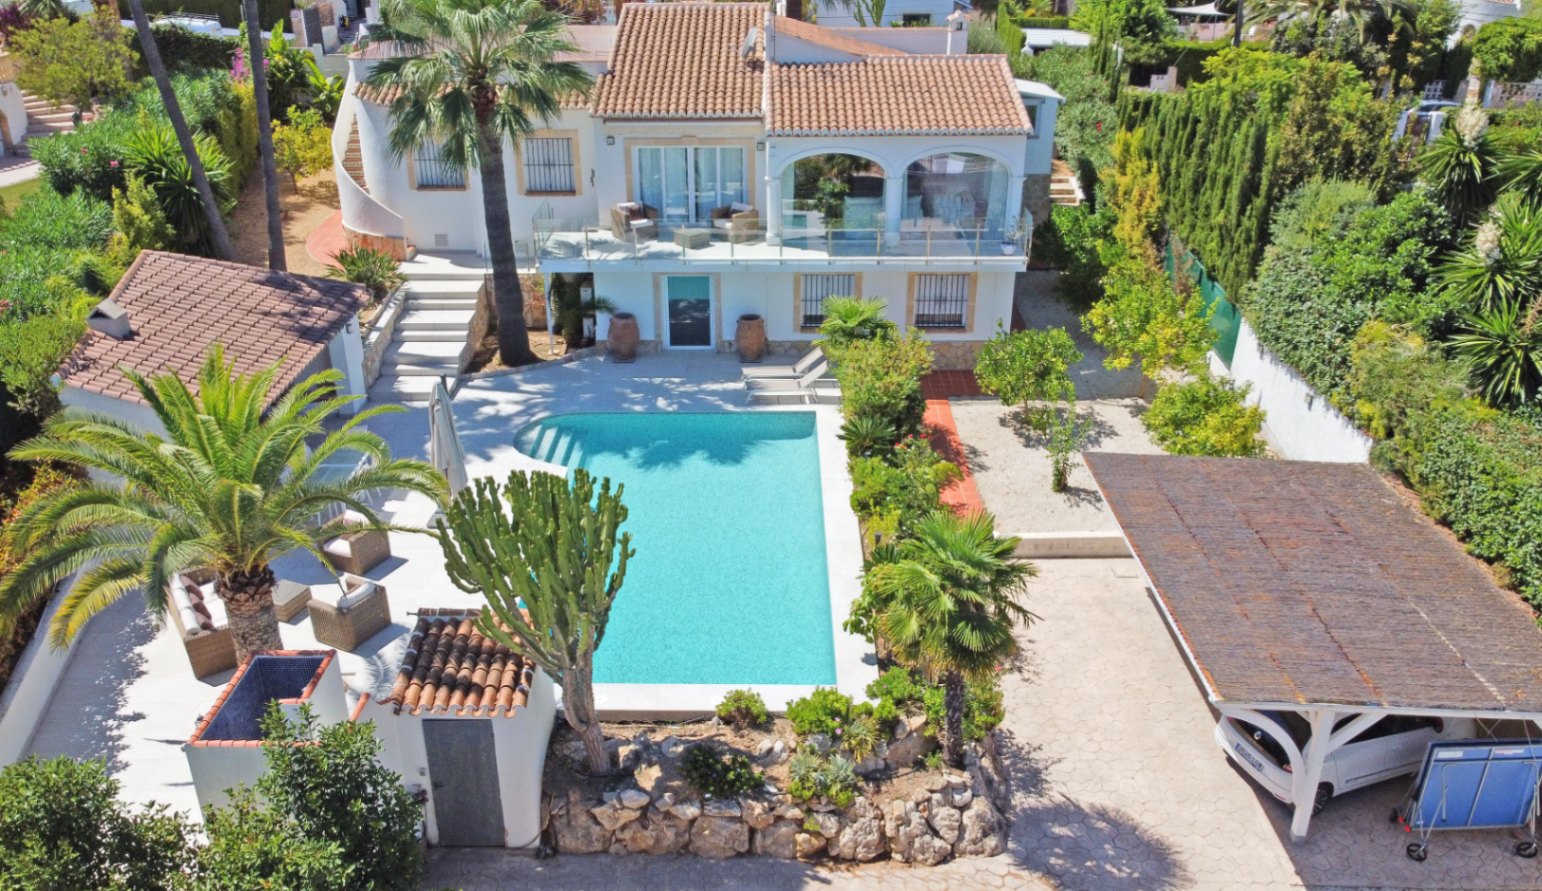 Villa for Sale with Sea View in the renowned urbanization Pinosol de Javea.